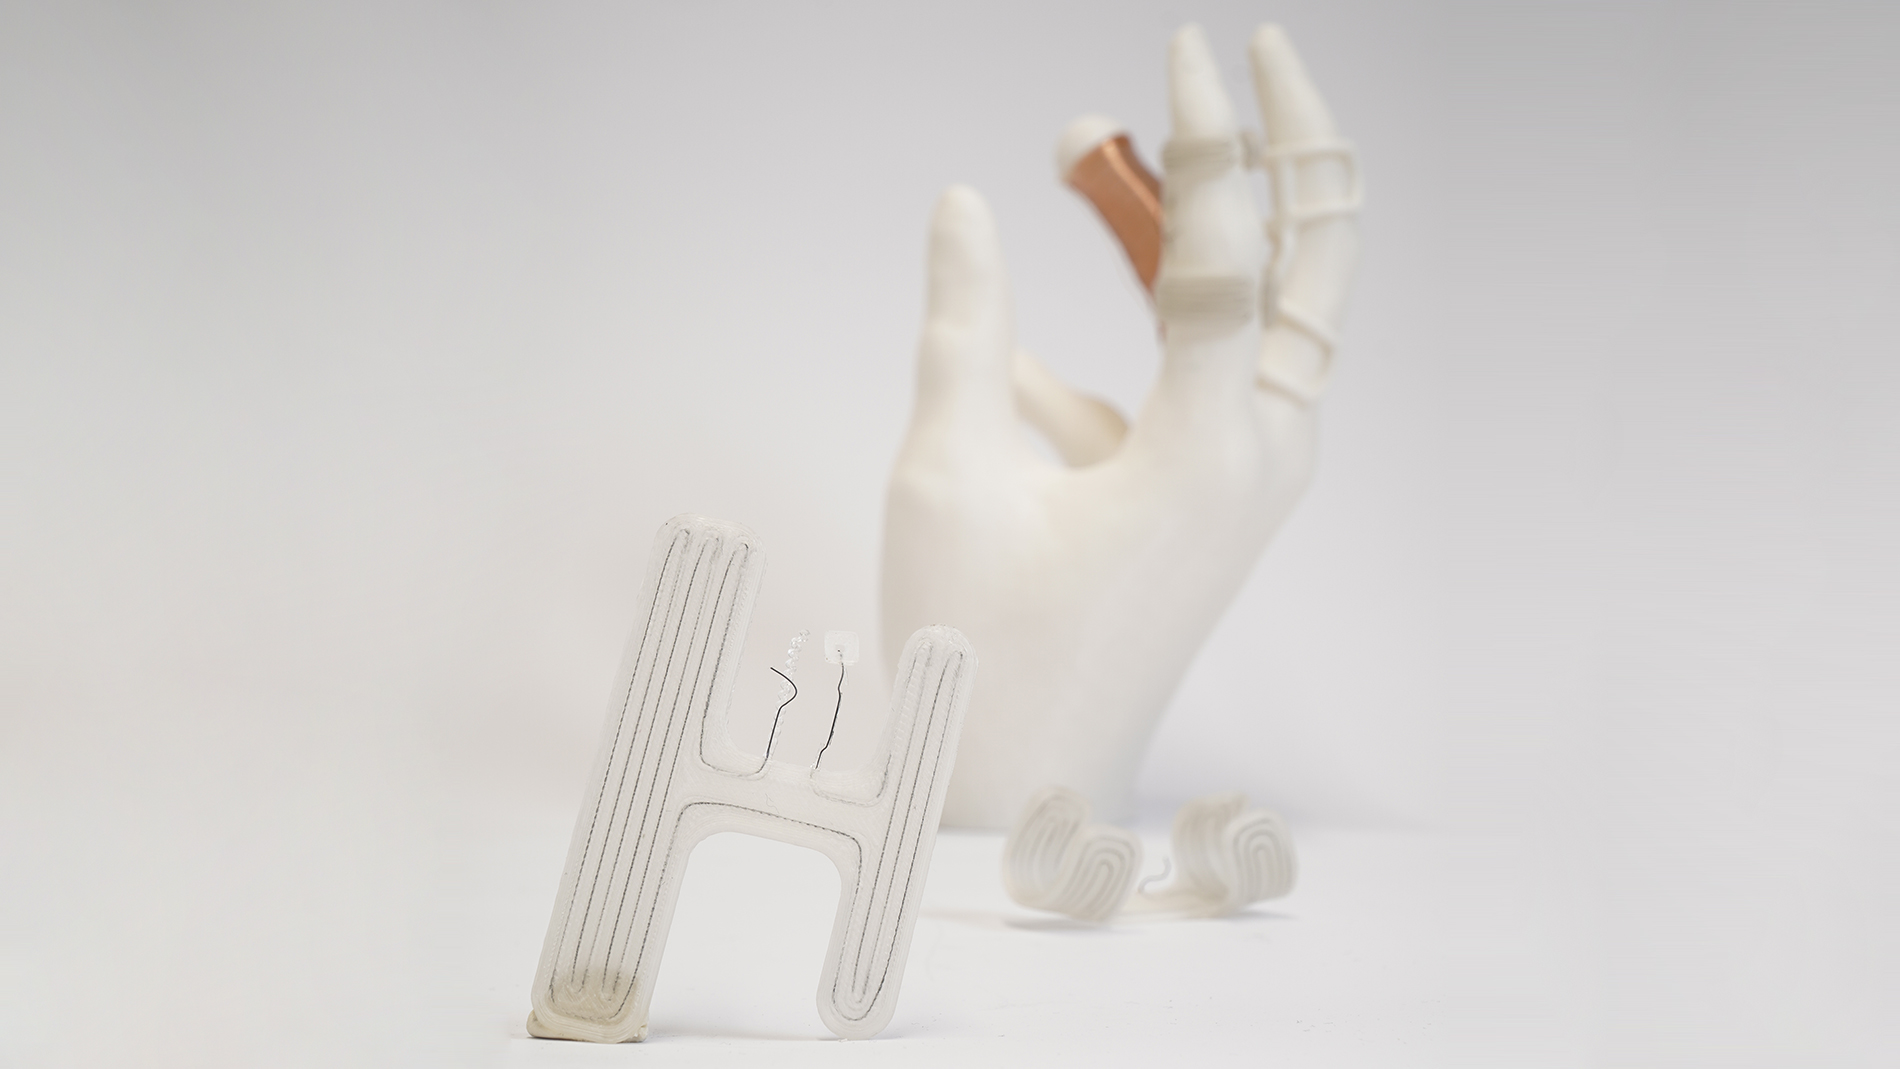 Finger orthotics manufactured using WEAM. Image: Fraunhofer IWU